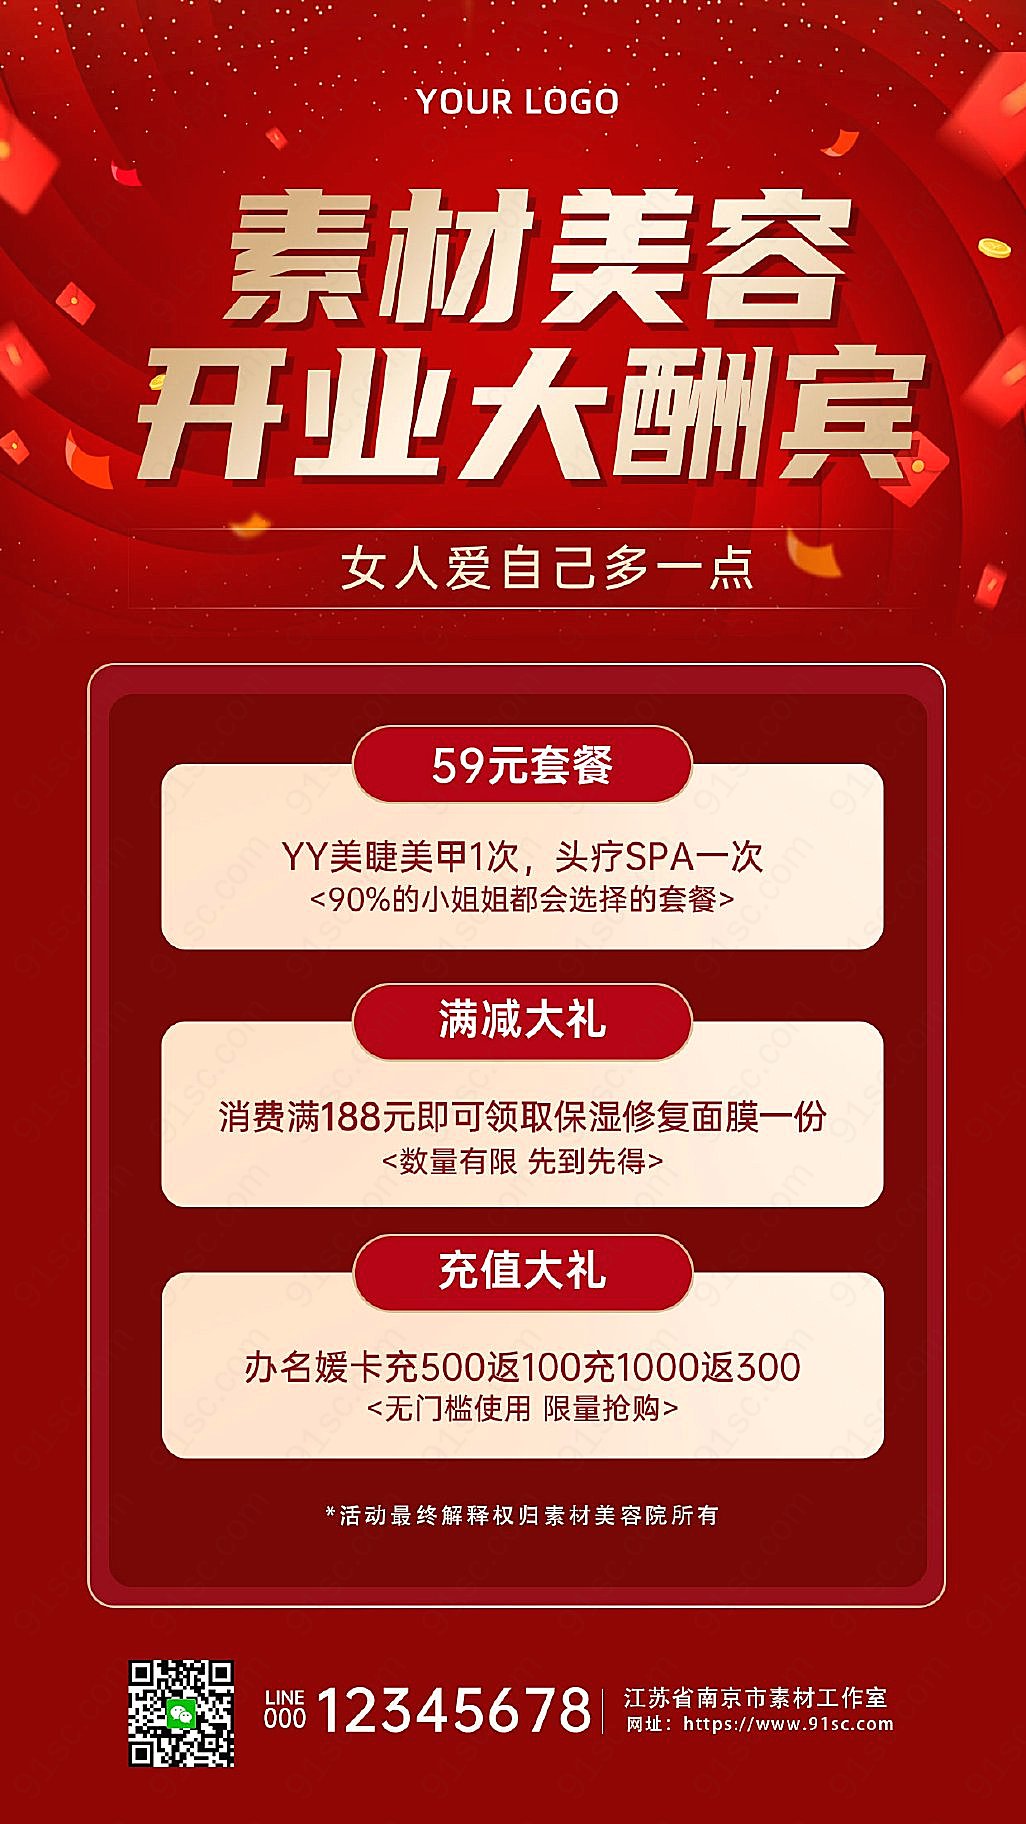 红色喜庆美容院开业酬宾活动手机宣传海报手机海报手机营销图新媒体用图下载